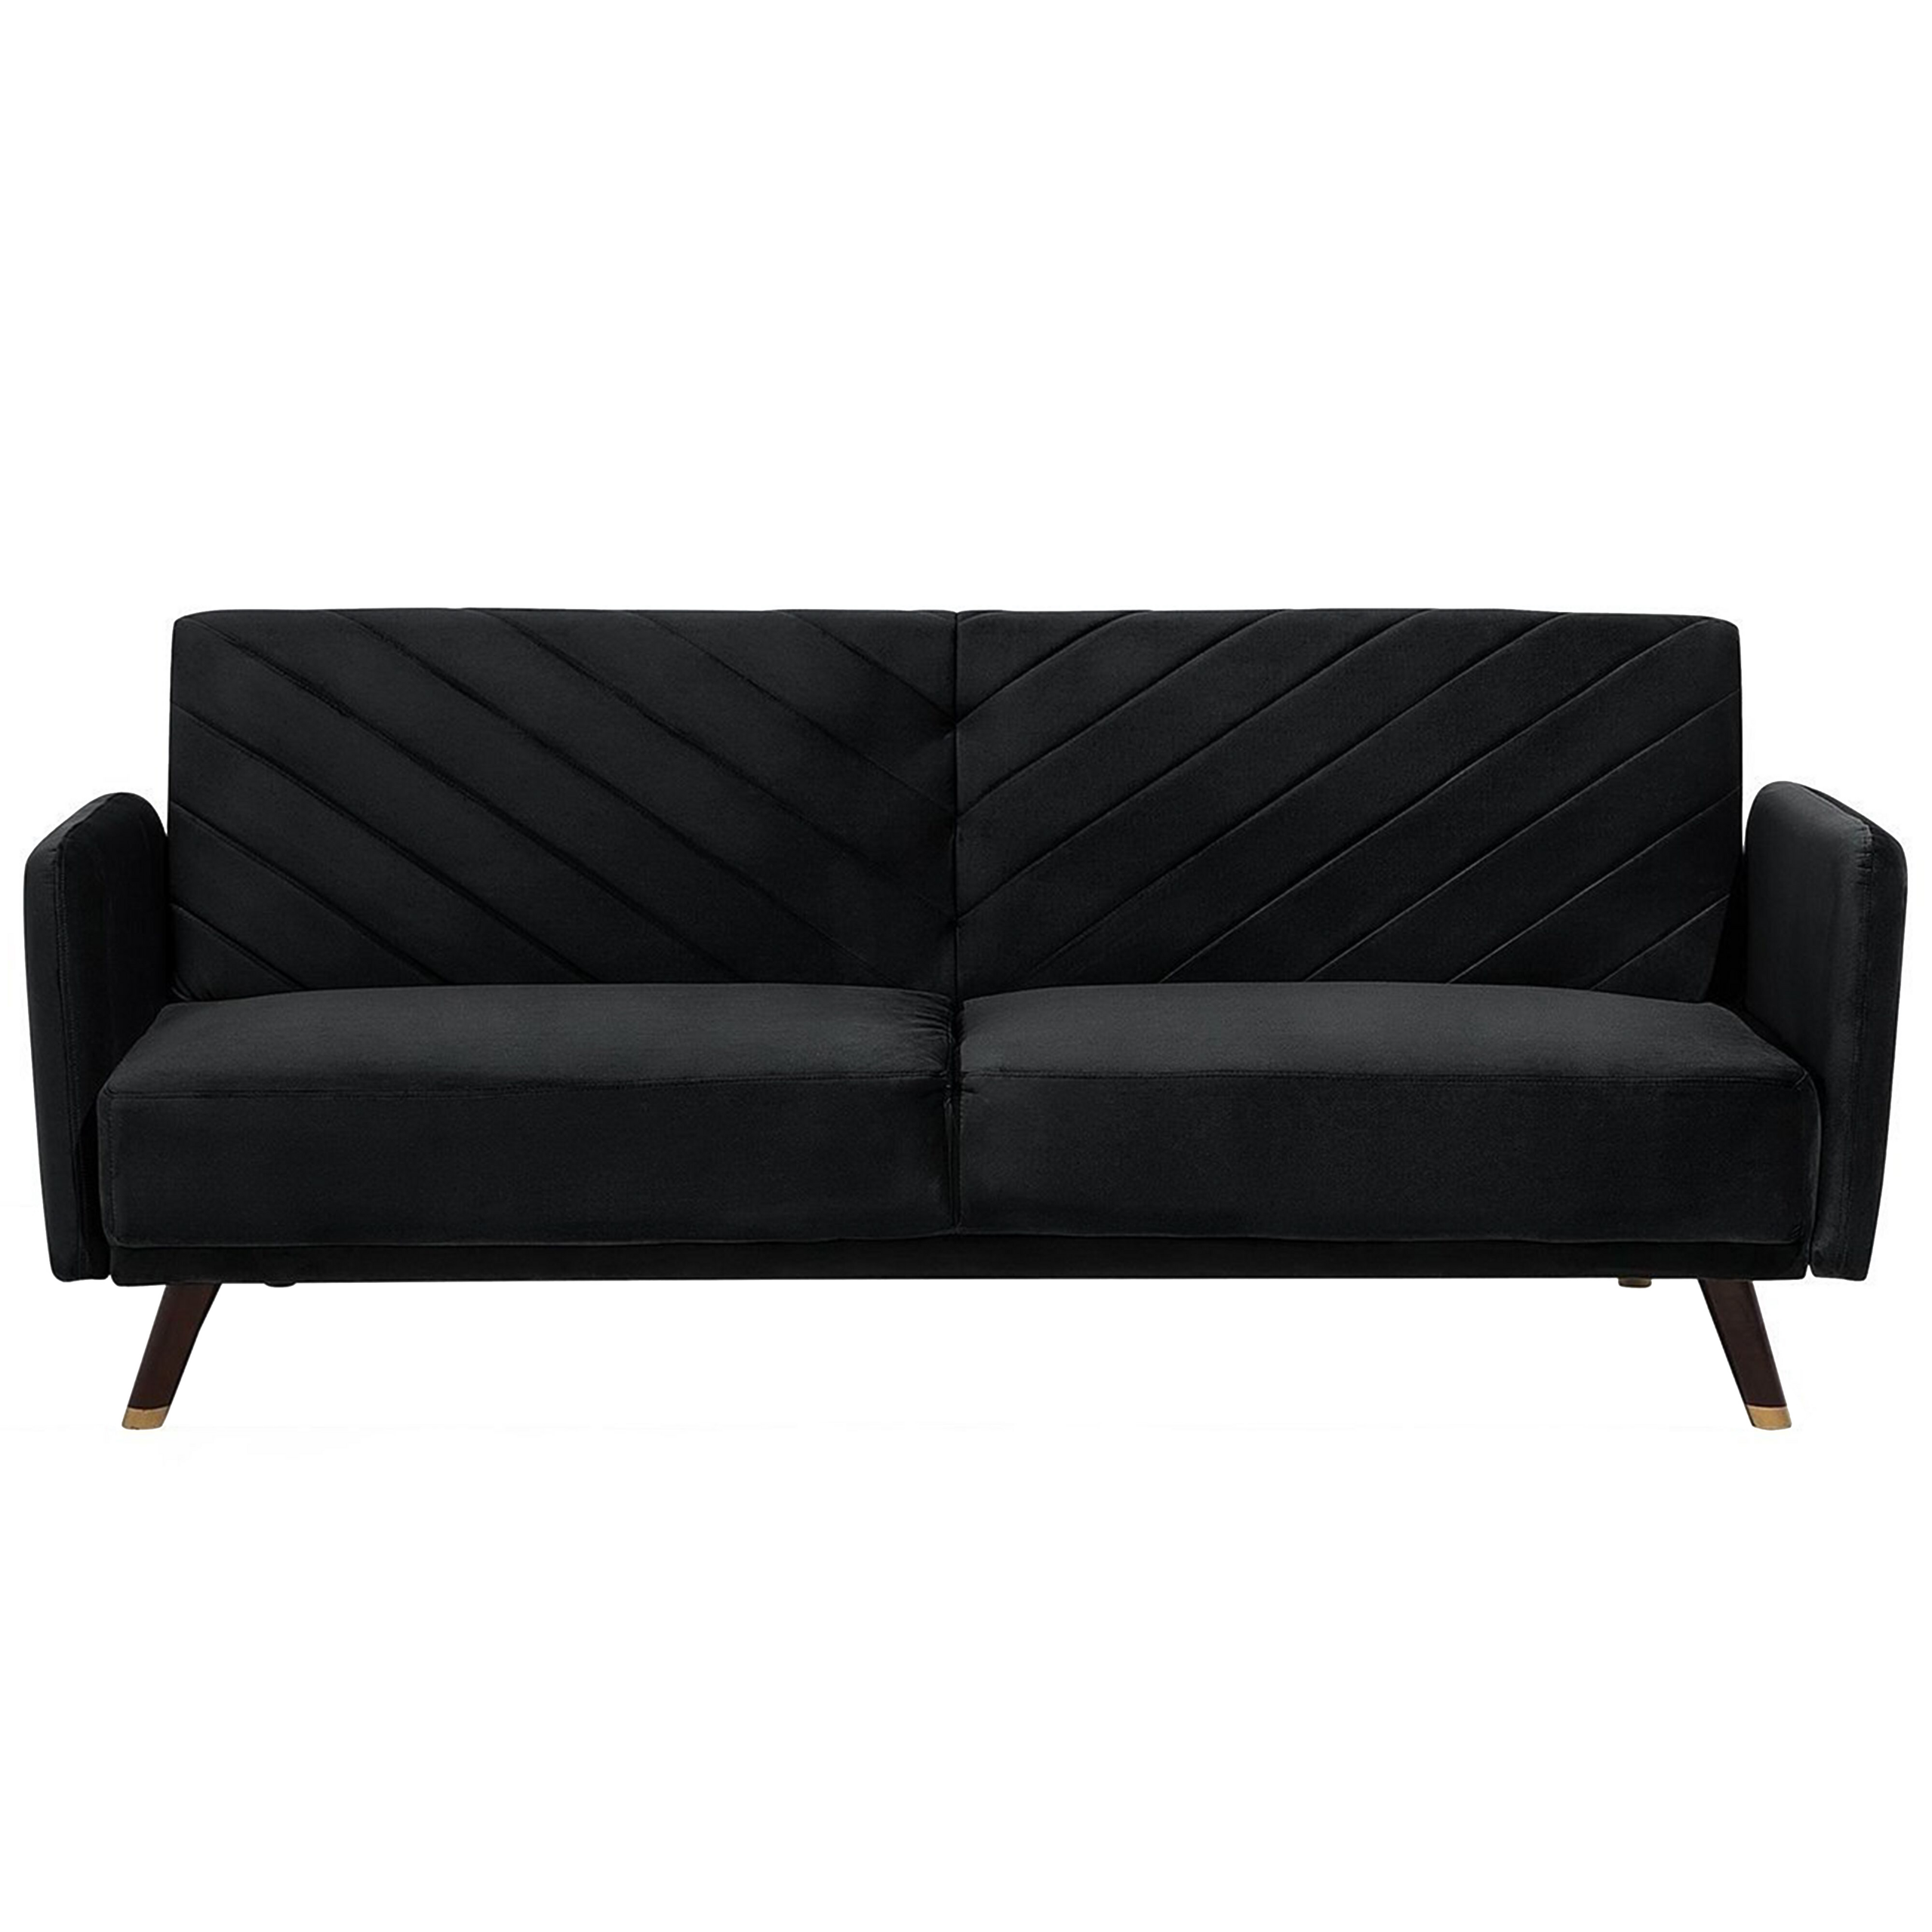 Beliani Sofa Bed Dark Black Velvet Fabric Modern Living Room 3 Seater Wooden Legs Track Arm